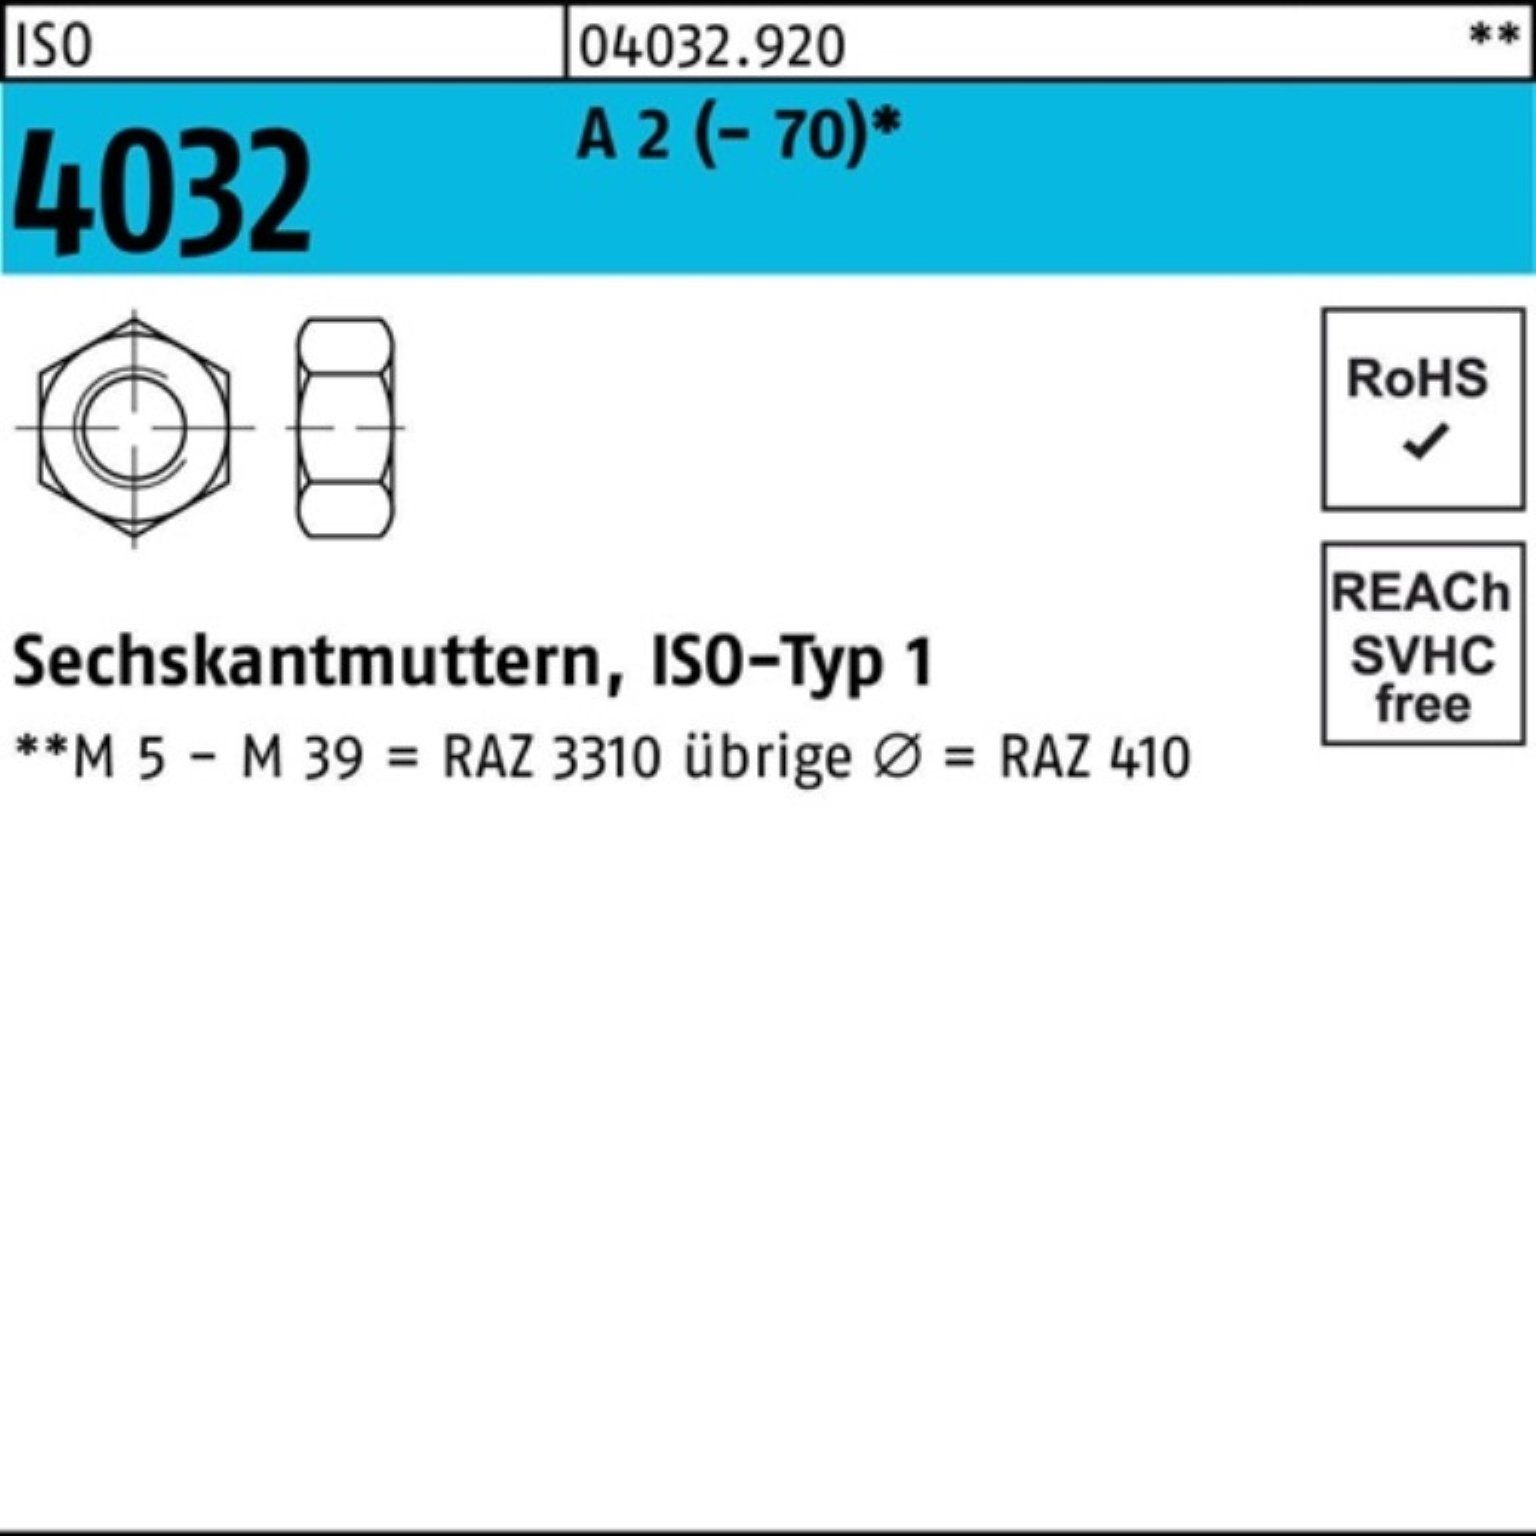 2 Stück 70 A Pack - 100er M33 2 A 4032 Sechskantmutter 1 ISO ISO Bufab Muttern 4032